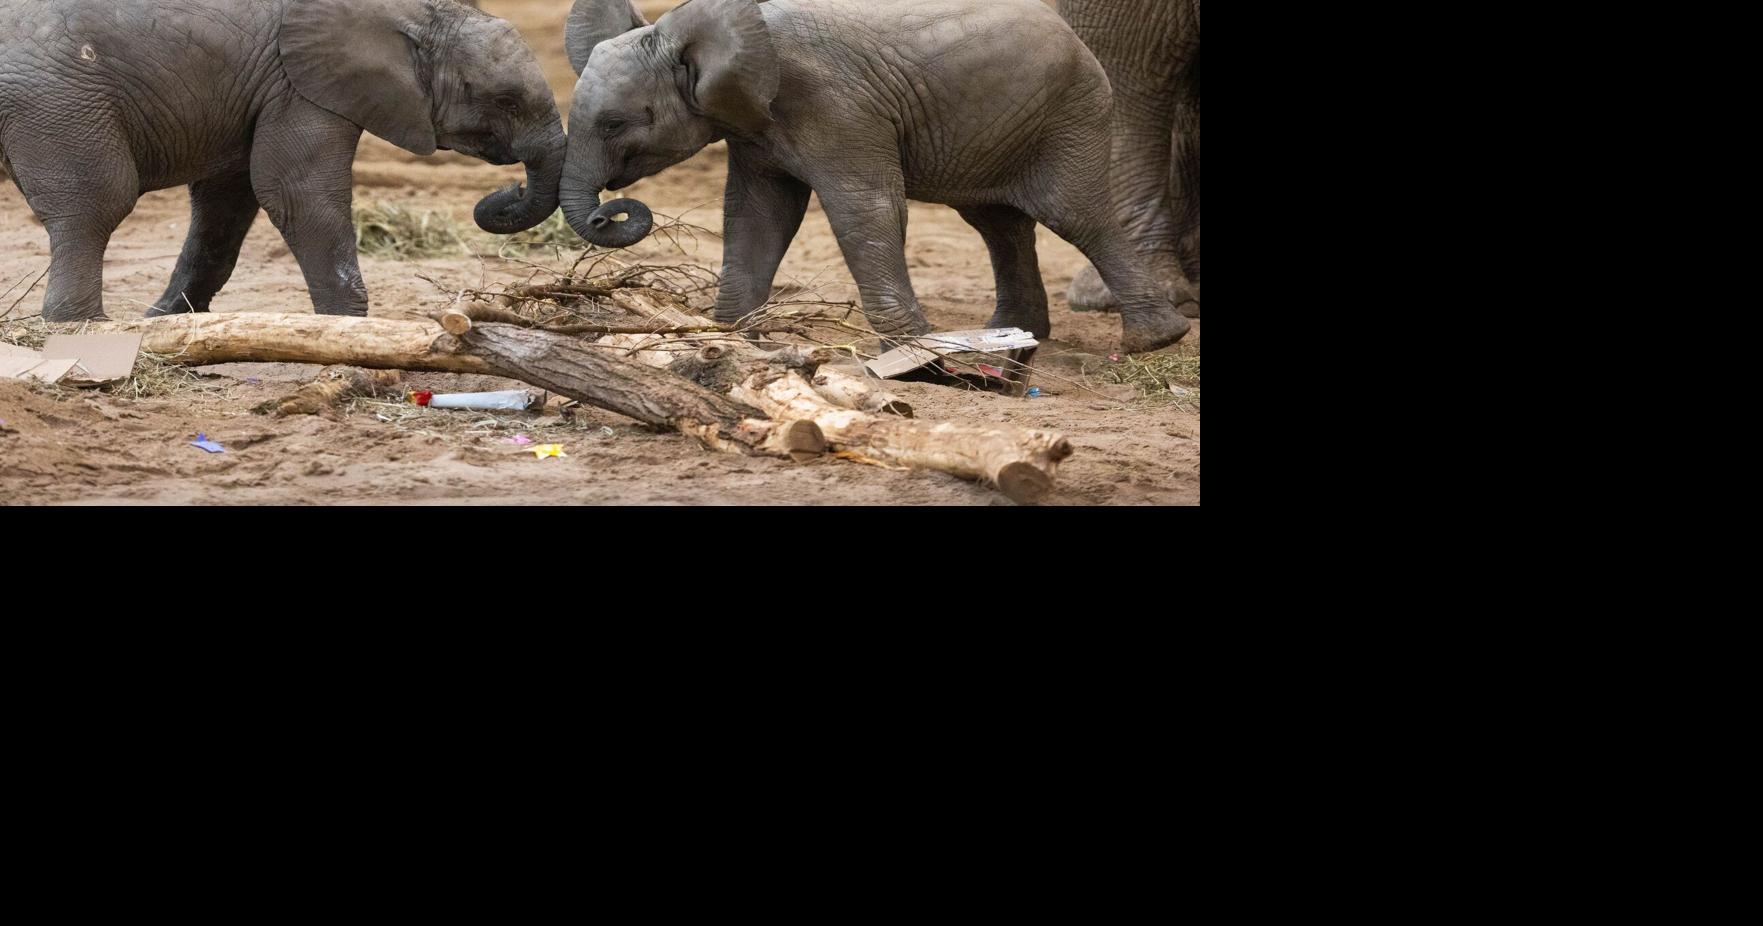 animal abuse elephants